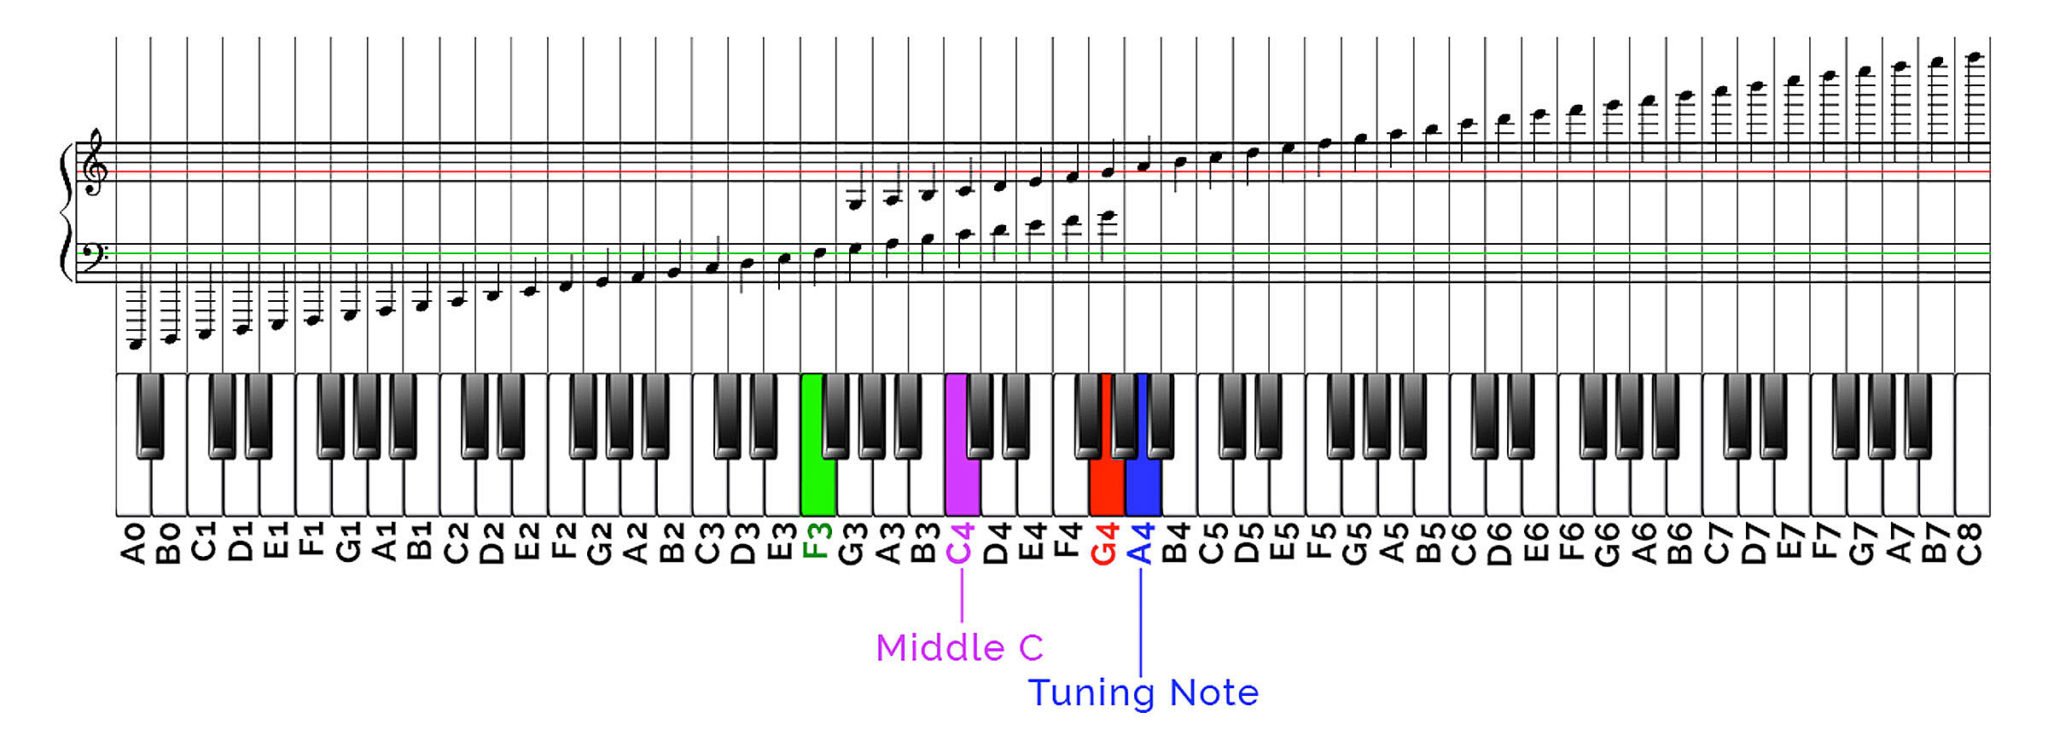 1 3 октавы. Схема расположения нот на синтезаторе 61 клавиша. Нота g 6 пианино. Расположение октав на синтезаторе 61 клавиша. Пианино Нота Piano e6.